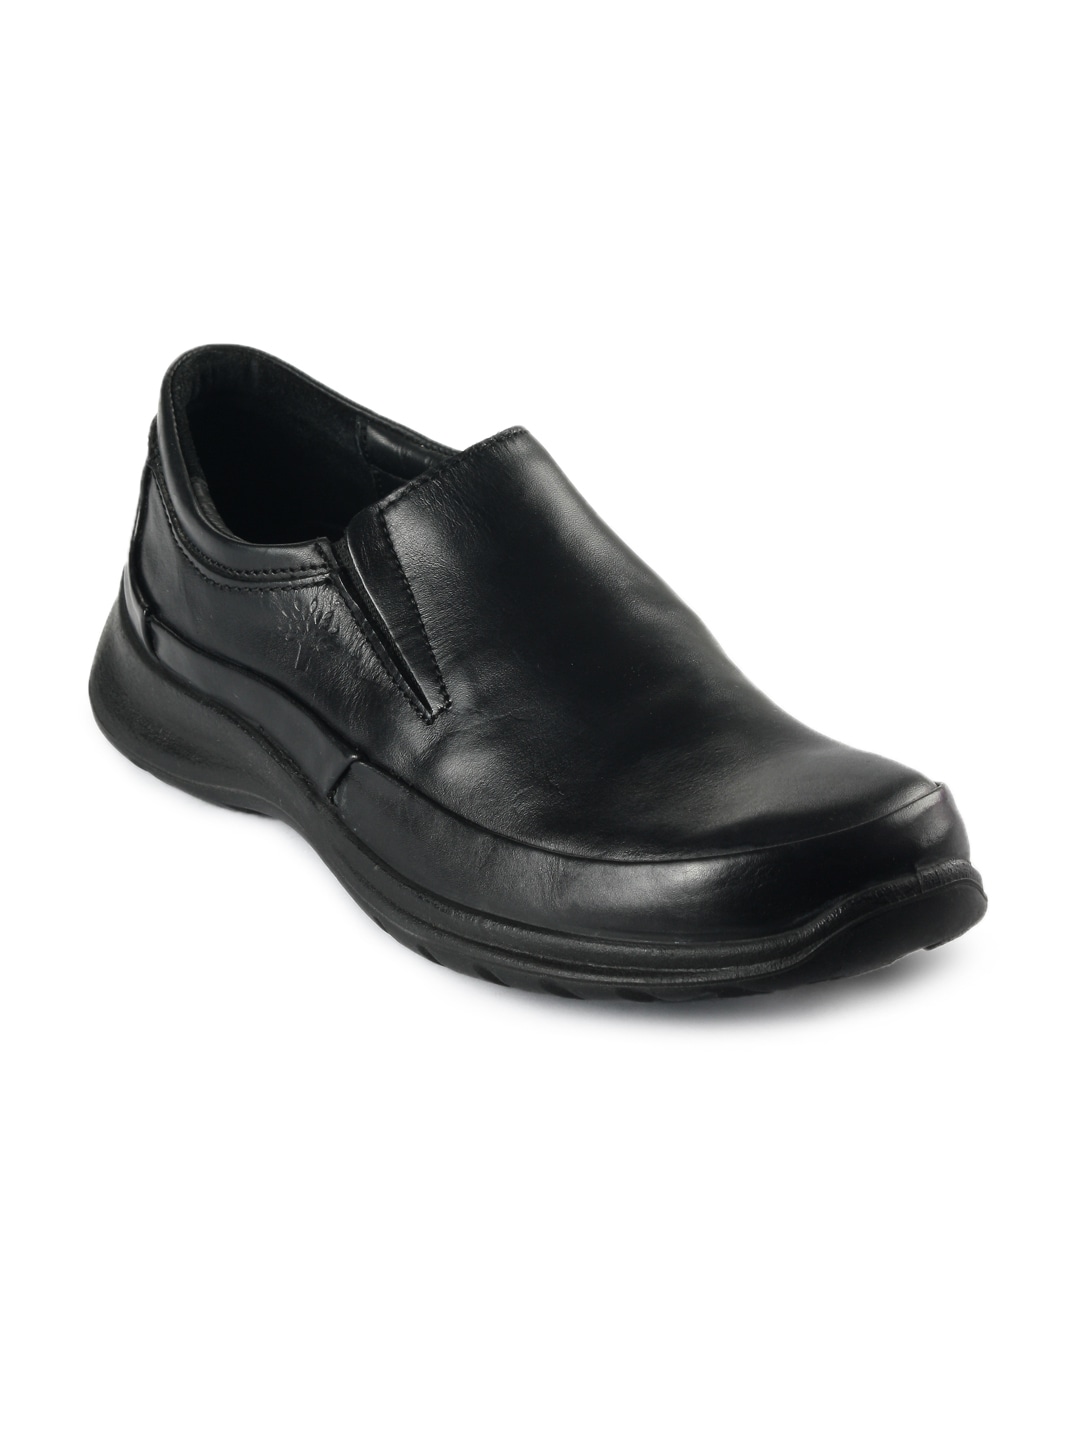 Woodland Men Black Formal Shoes